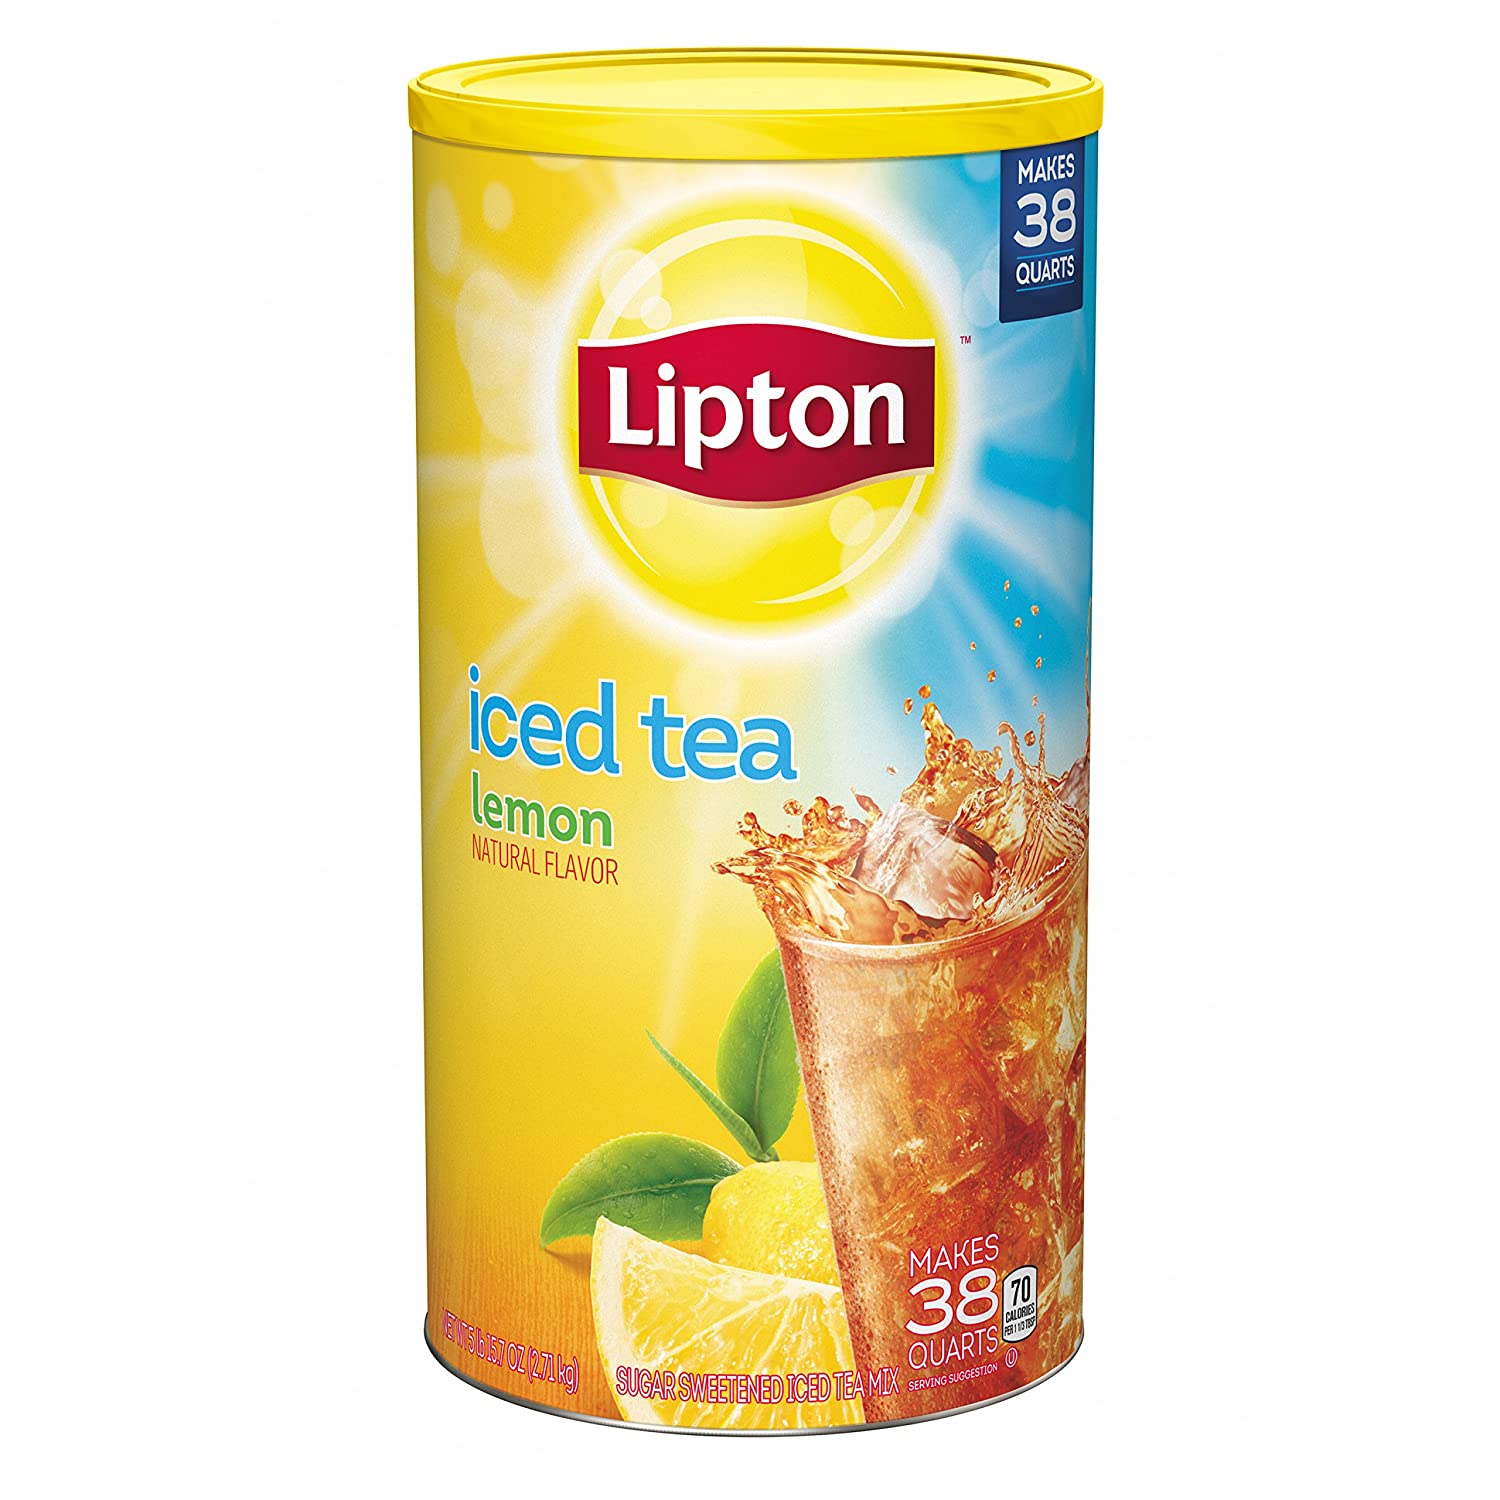 10-lipton-iced-tea-nutrition-facts